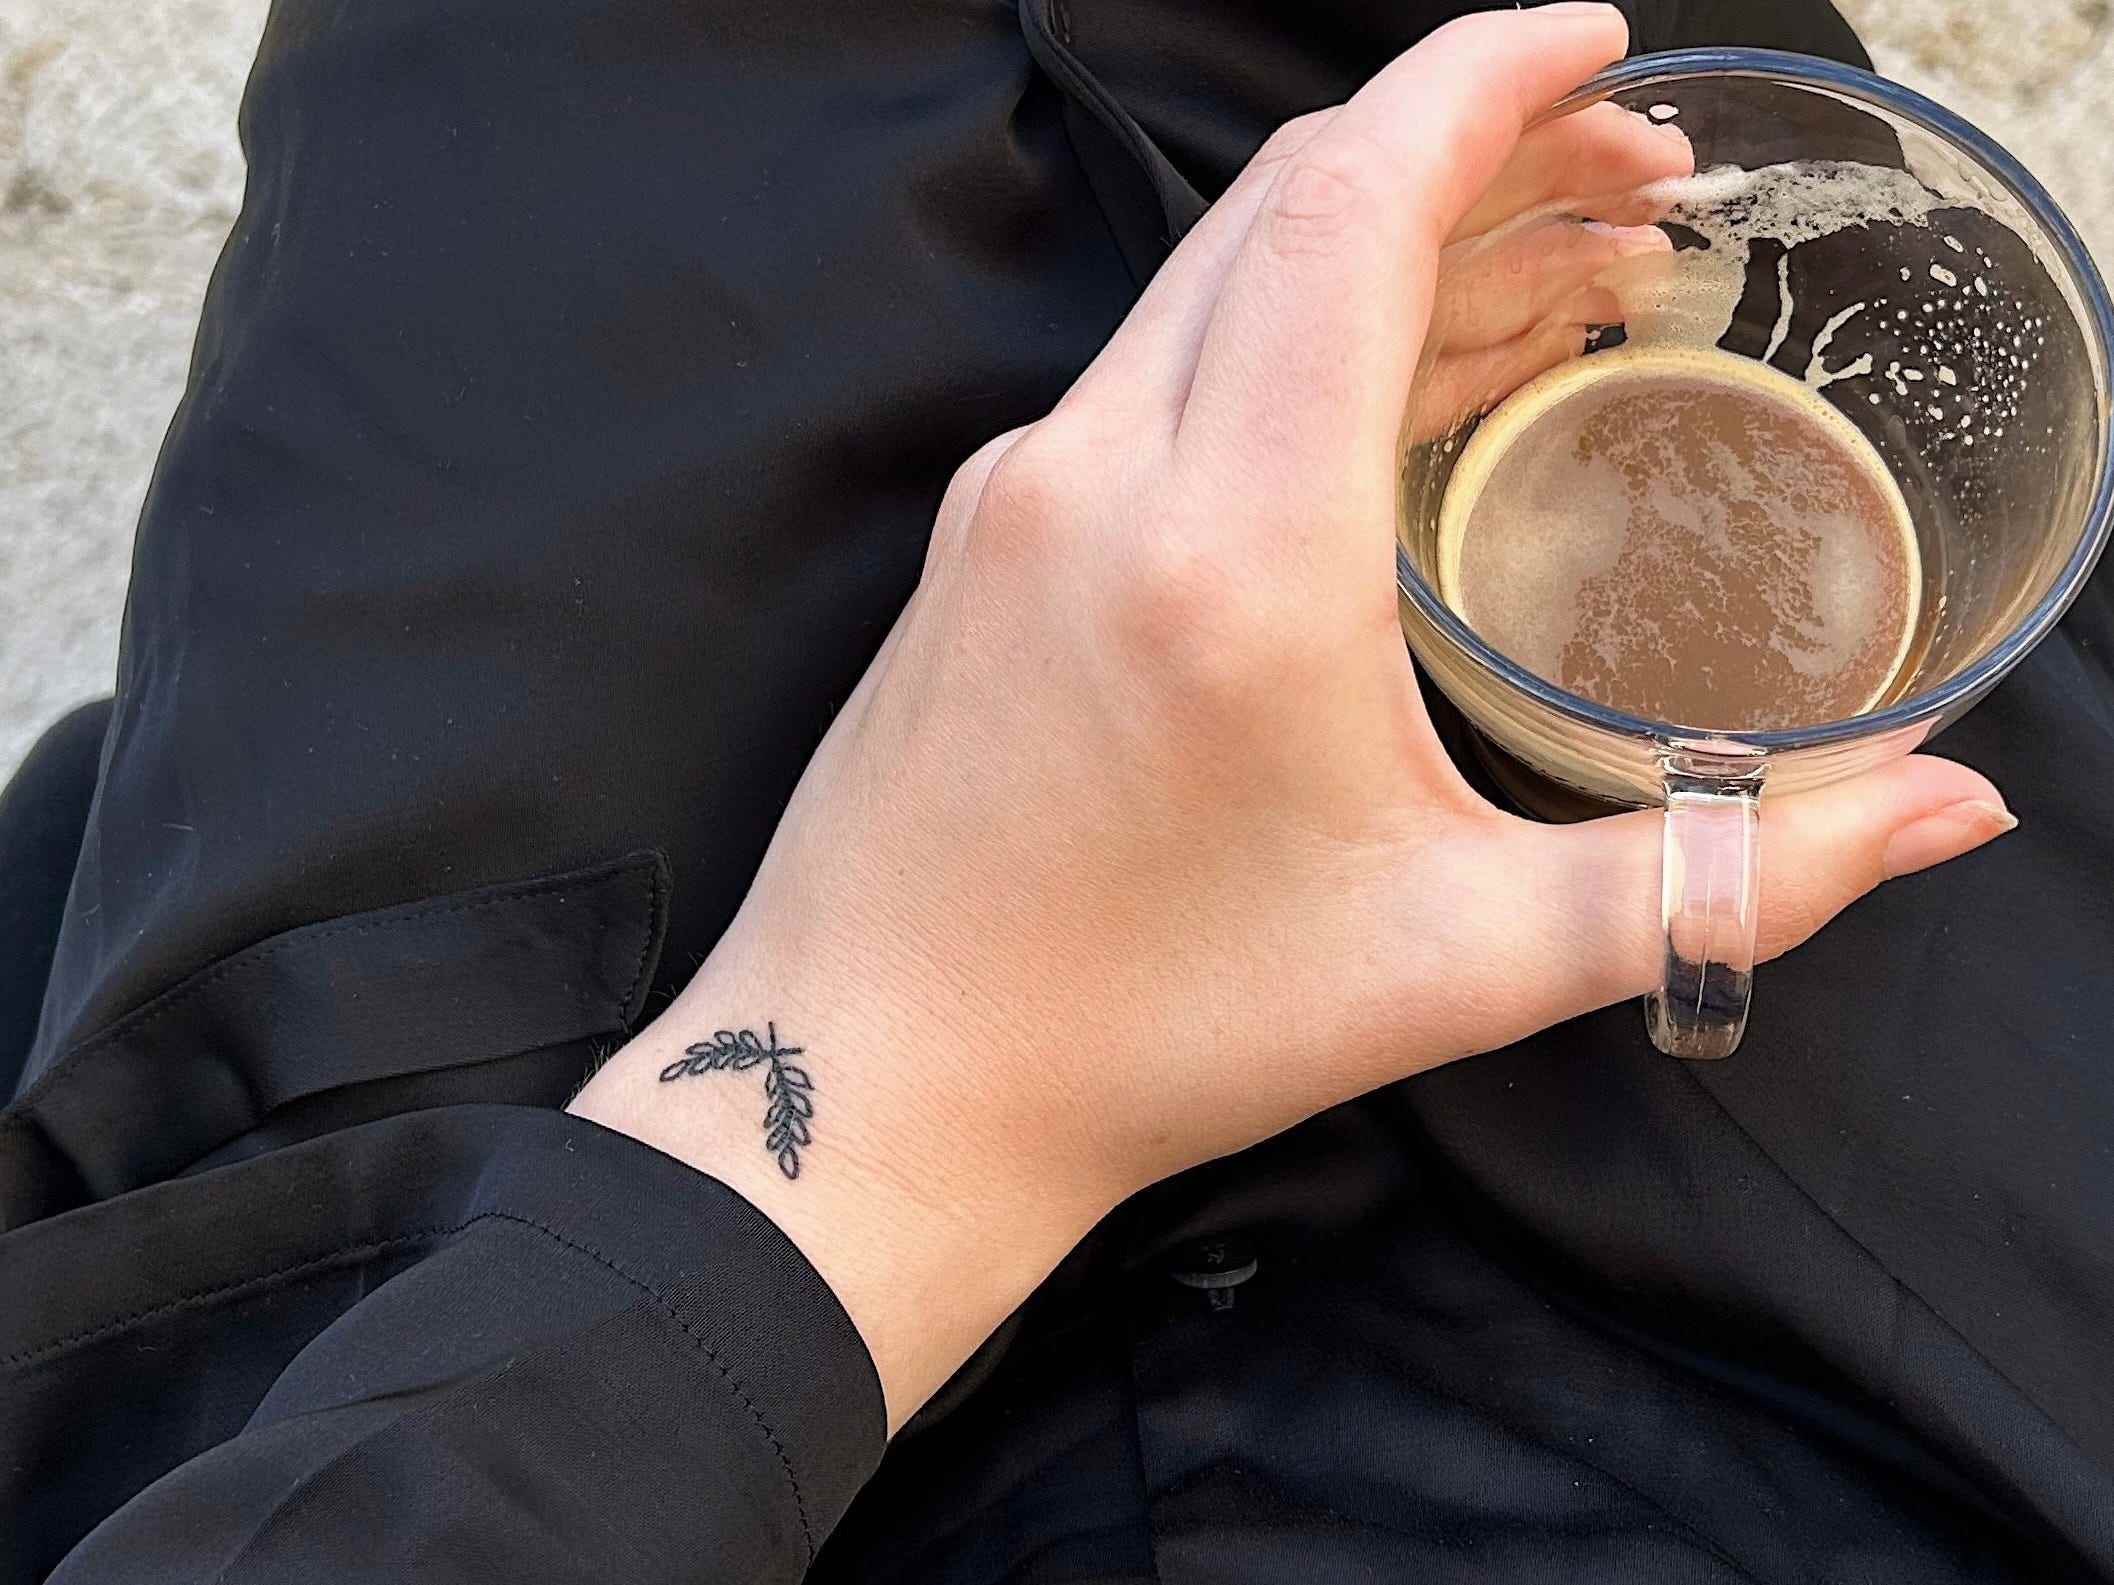 Der Autor hält eine Tasse Kaffee.  An ihrem Handgelenk ist ein Tattoo mit einem Olivenzweig zu sehen.